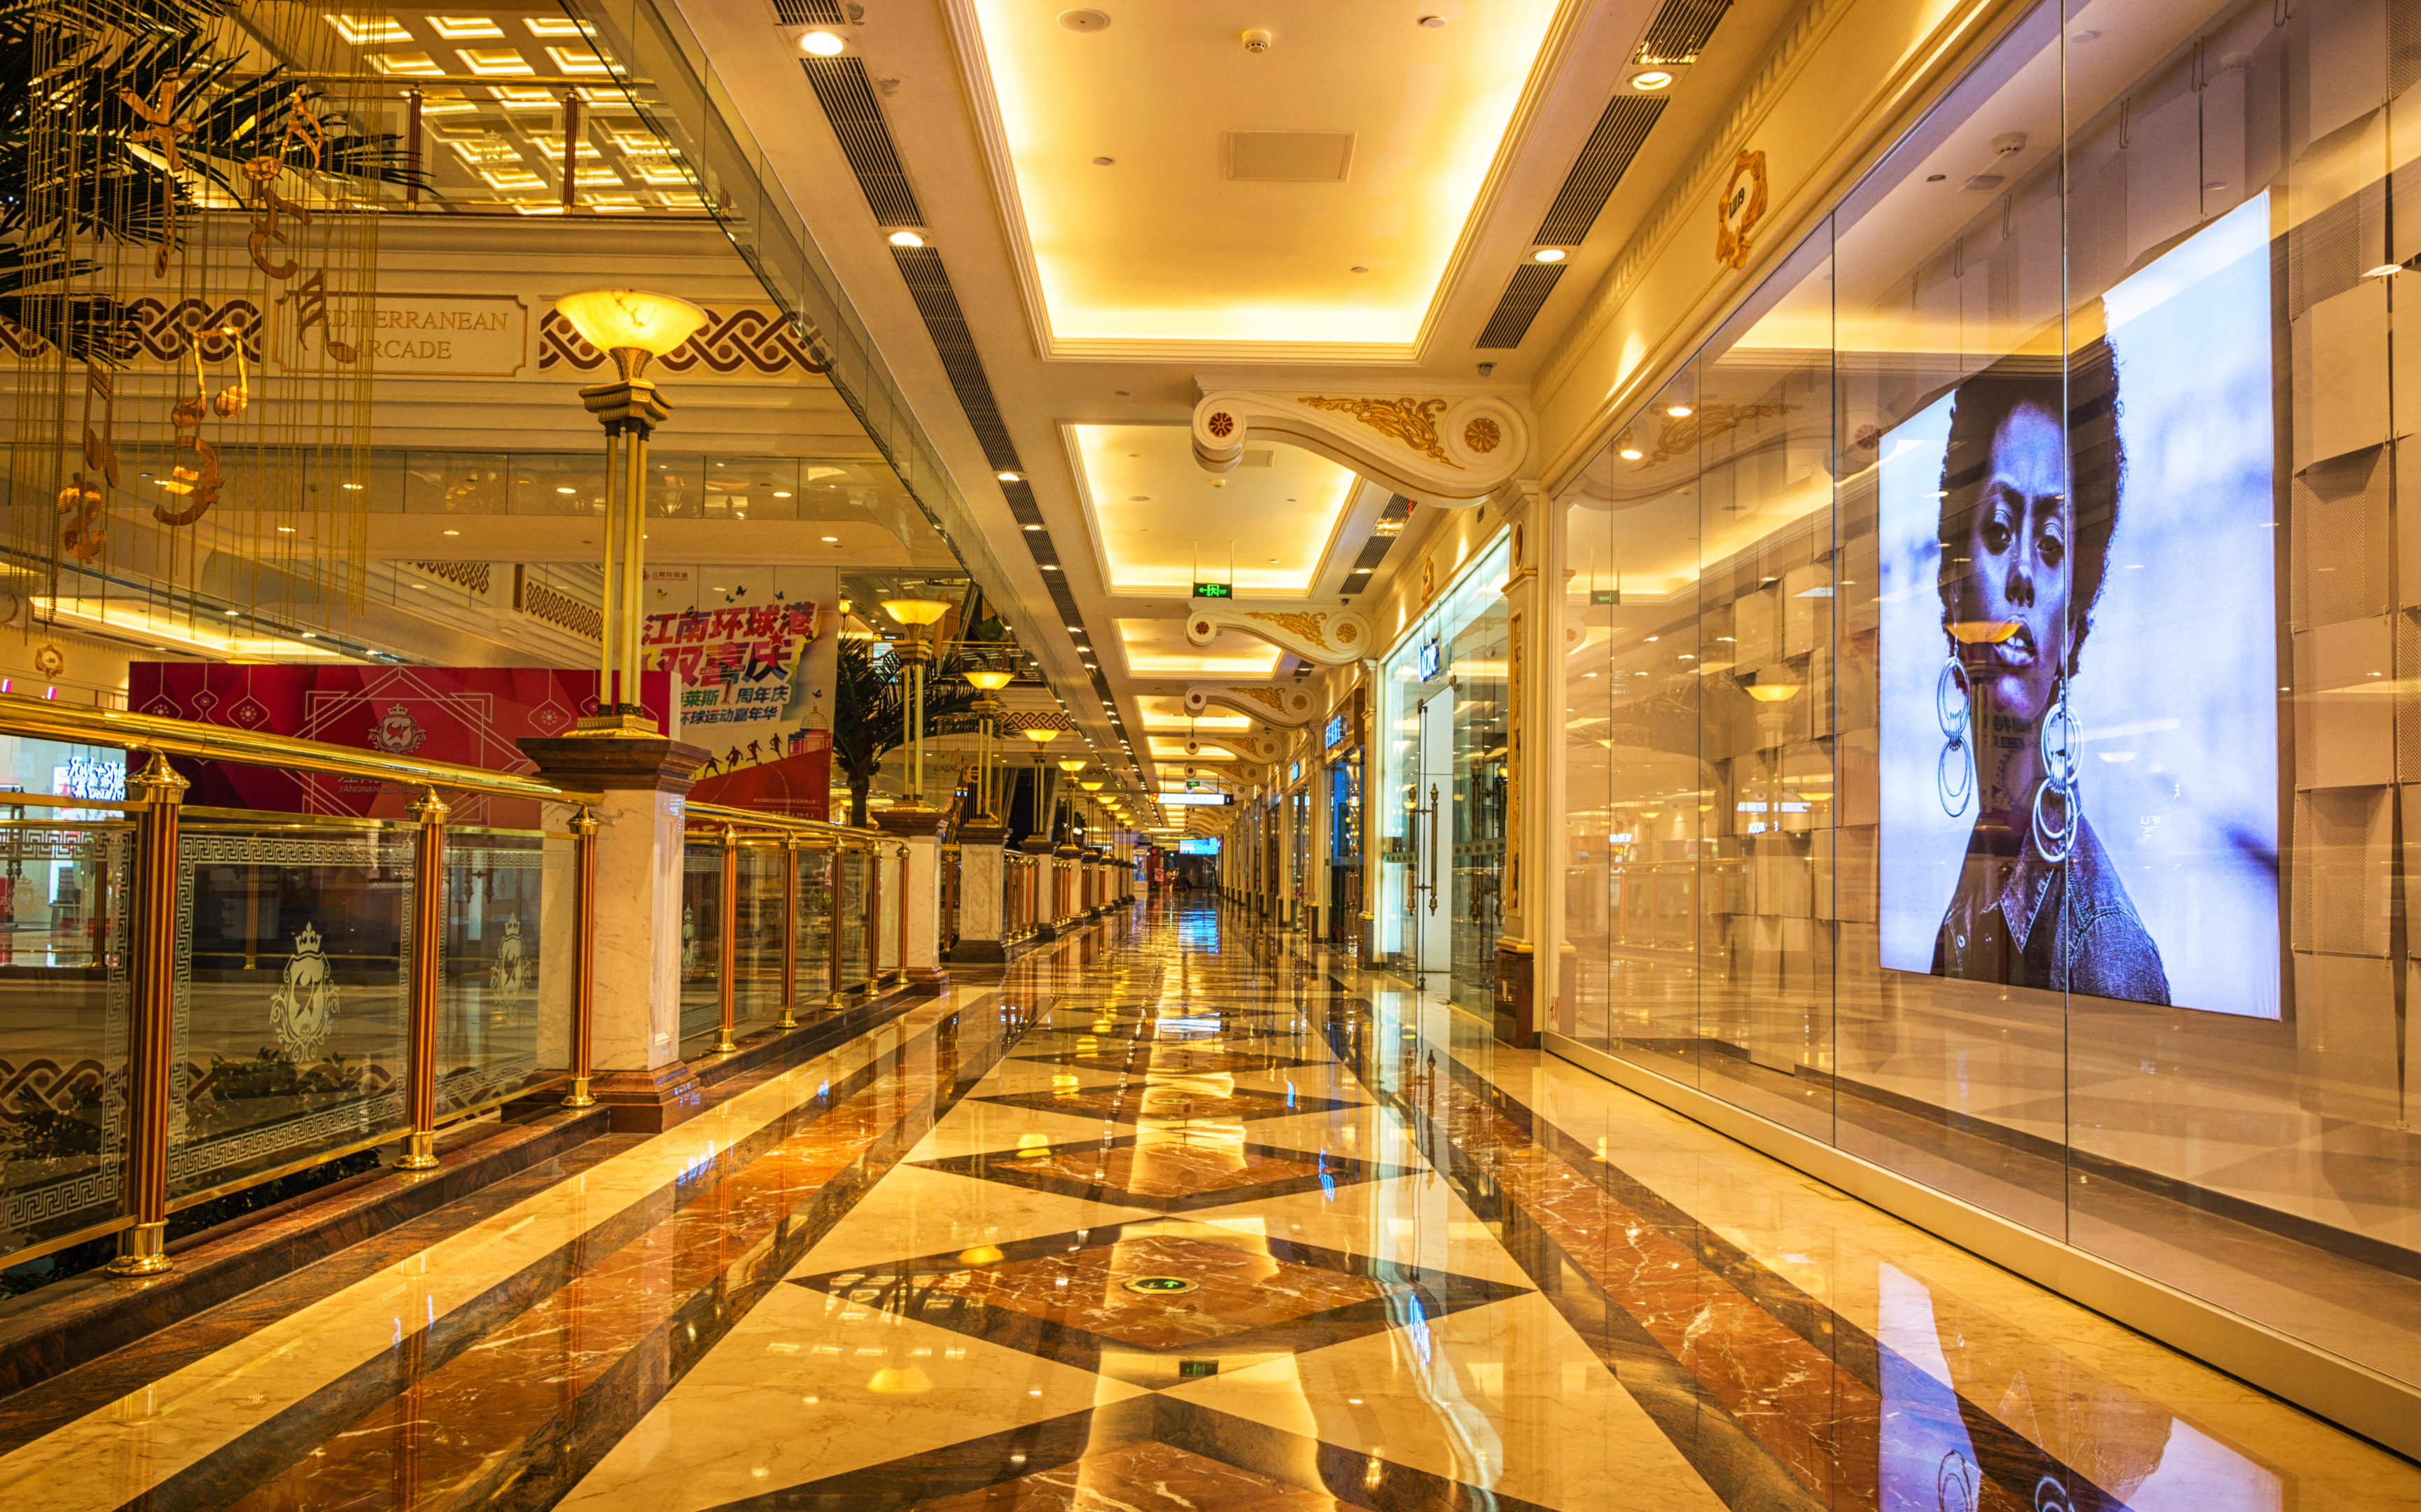 Corridor full of LED Lights - Shopping Mall